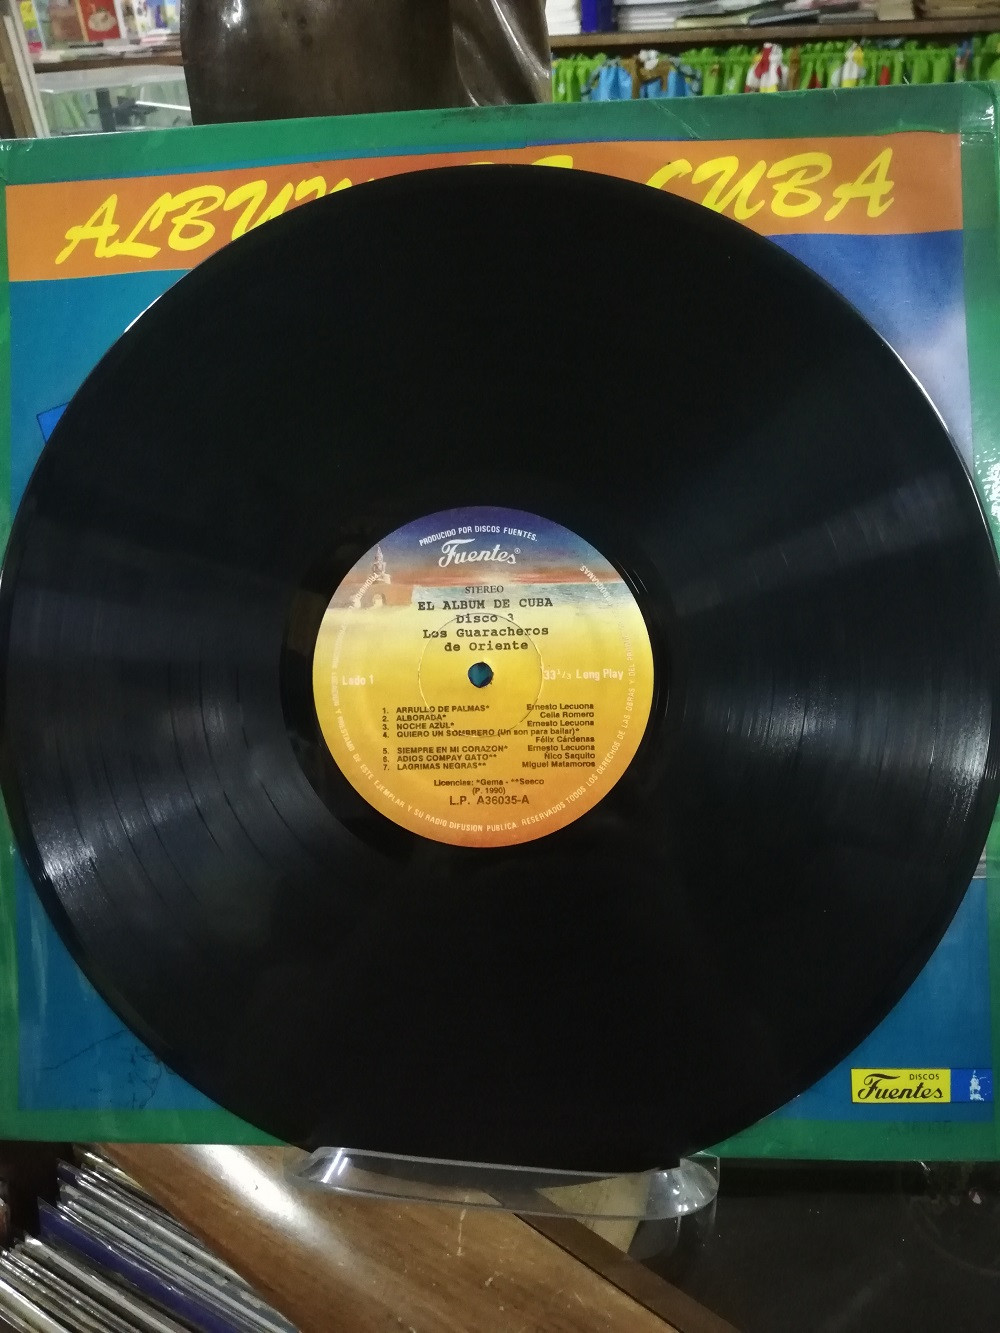 Imagen LP X 3 ALBUM DE CUBA - GUILLERMO PORTABALES/CELINA Y REUTILIO/GUARACHEROS DE ORIENTE 7